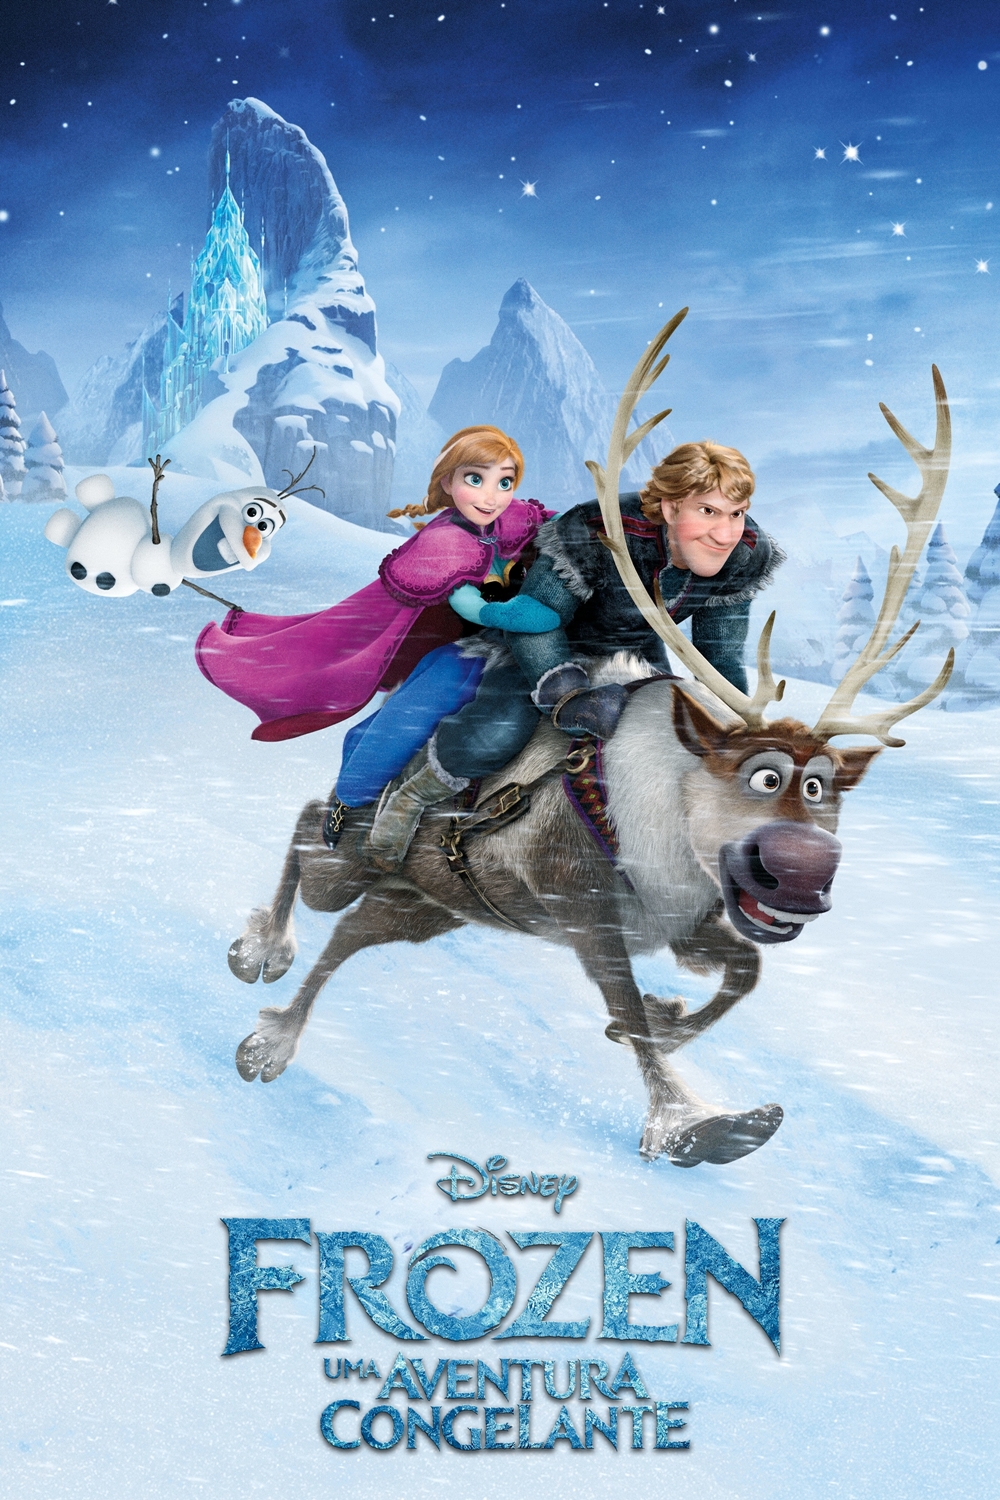 Dica de Filme: Frozen uma aventura congelante !!